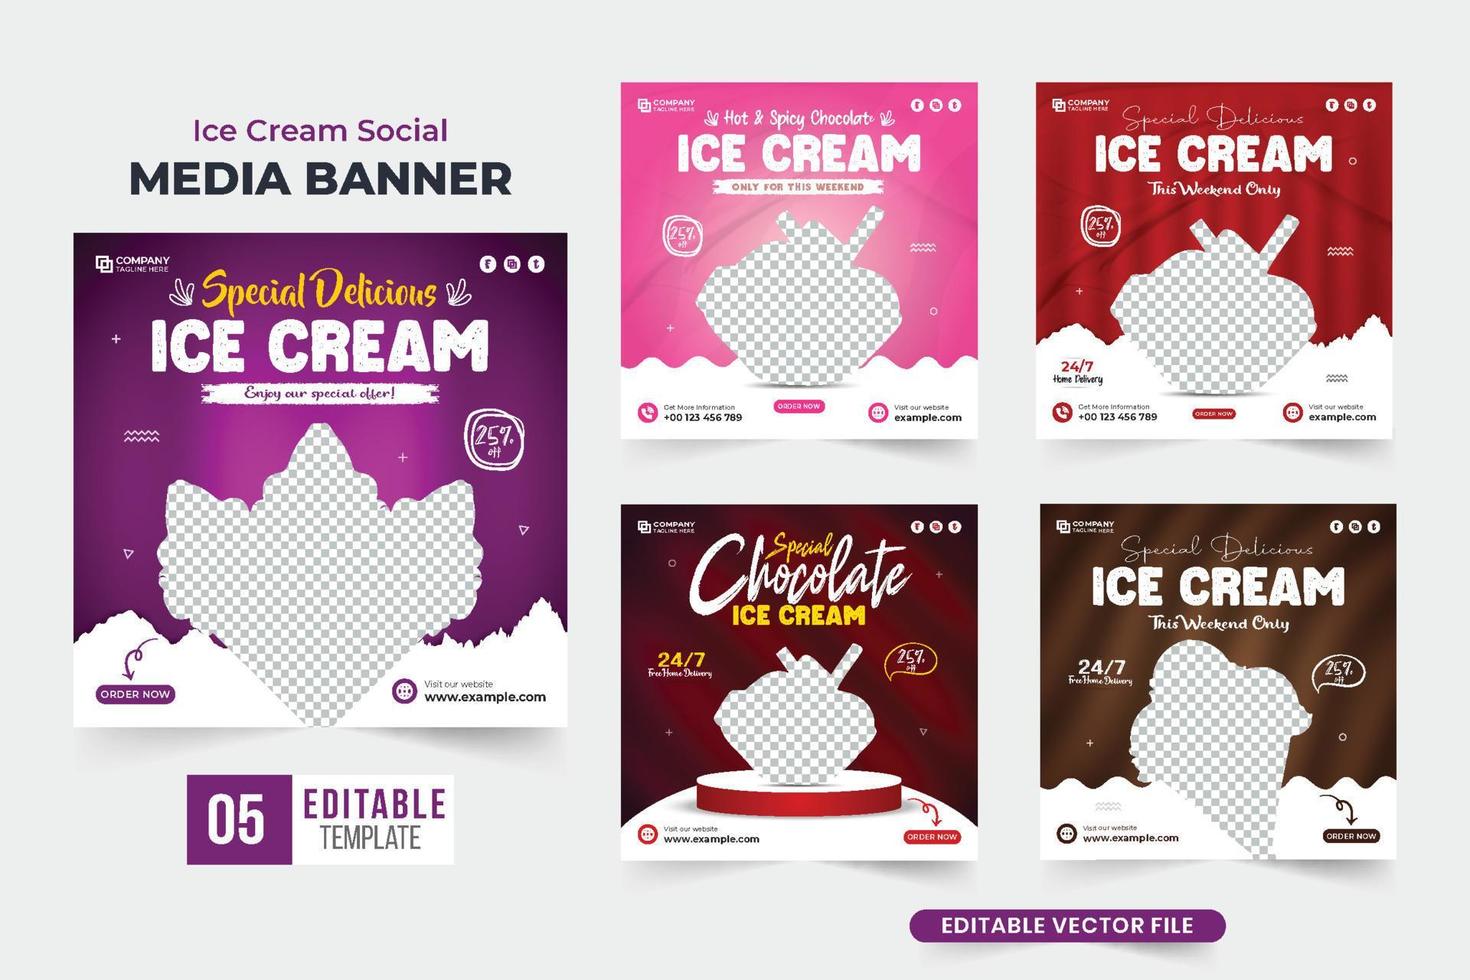 sabroso paquete de afiches promocionales de postres diseñado con colores morados y oscuros. colección de publicaciones en redes sociales de negocios de helados para marketing. vector de conjunto de plantillas de anuncio de helado delicioso.